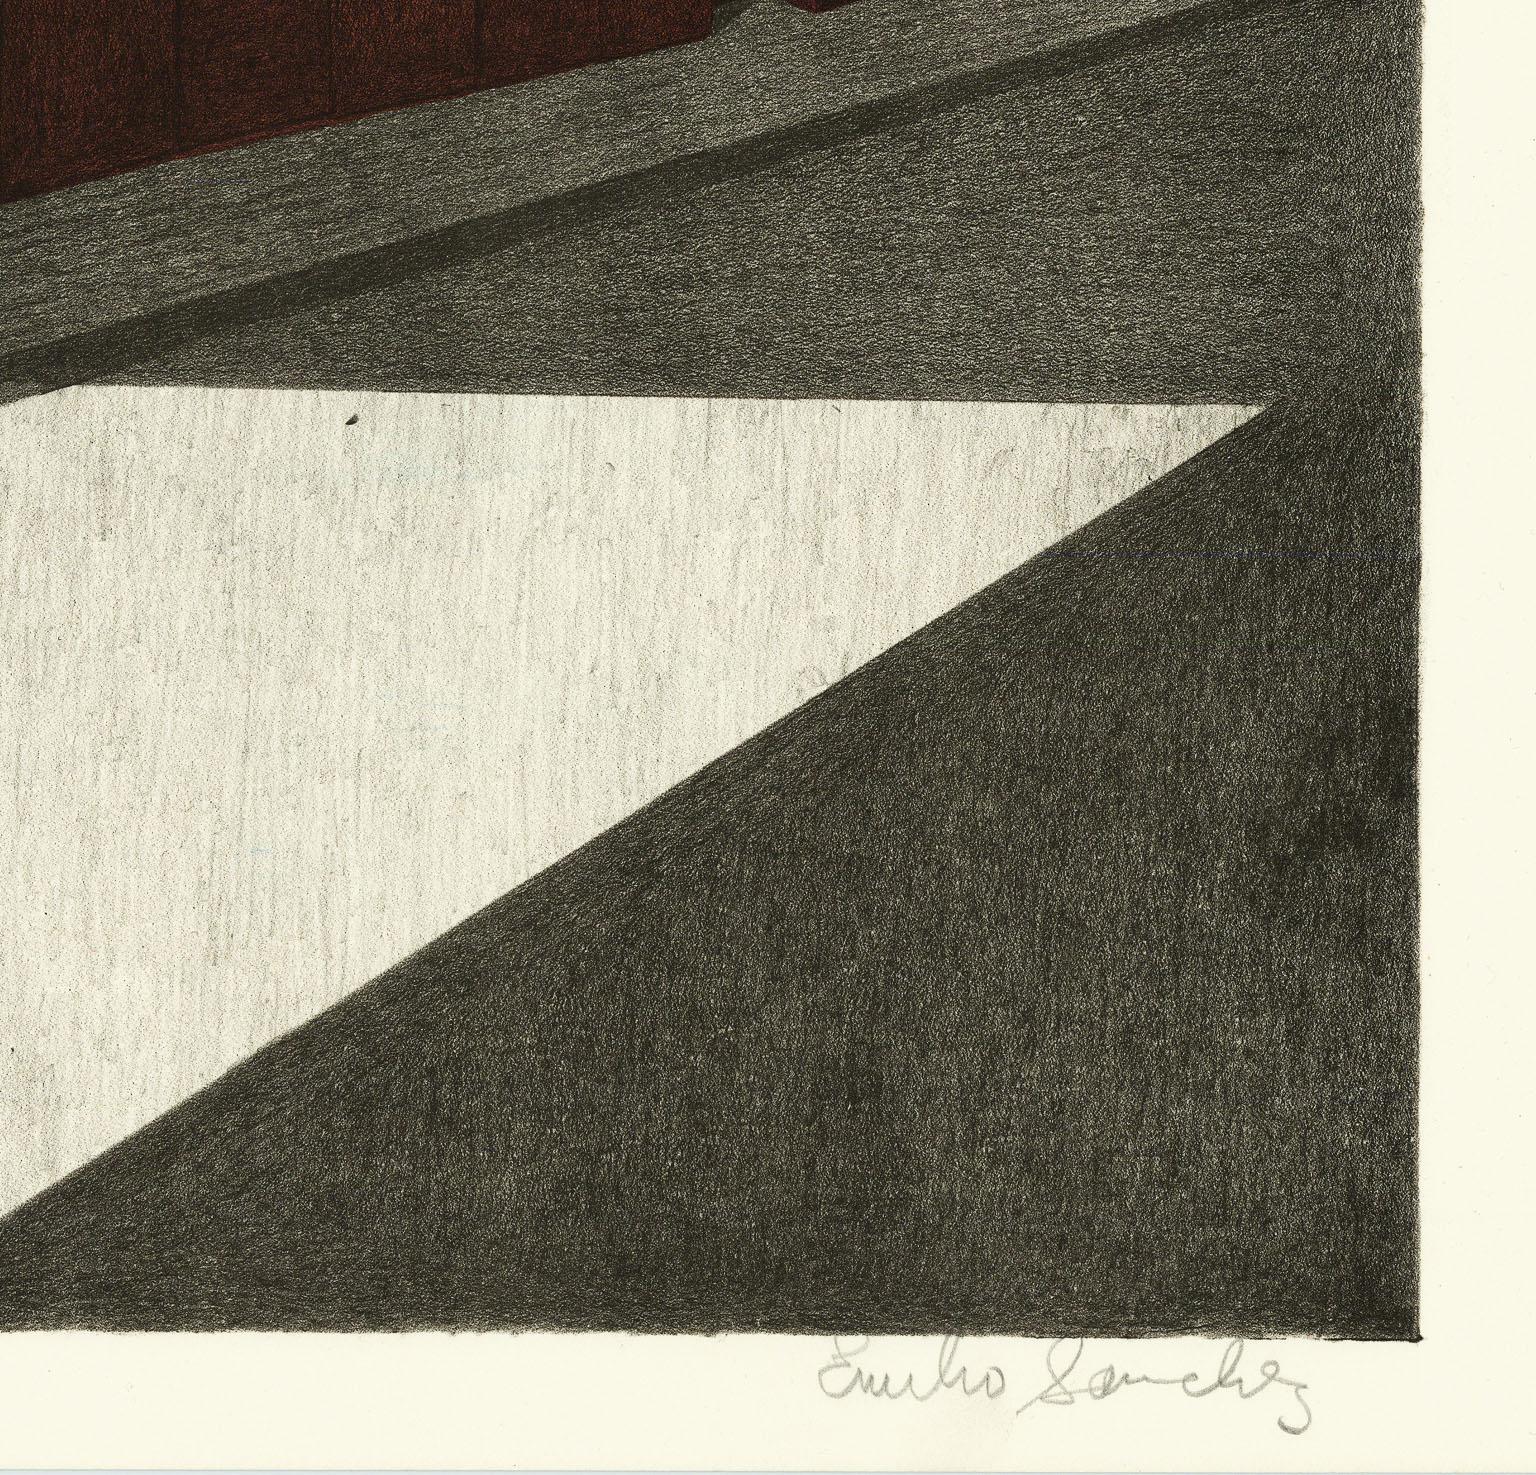 Das Schatten der Brooklyn Bridge. – Print von Emilio Sanchez